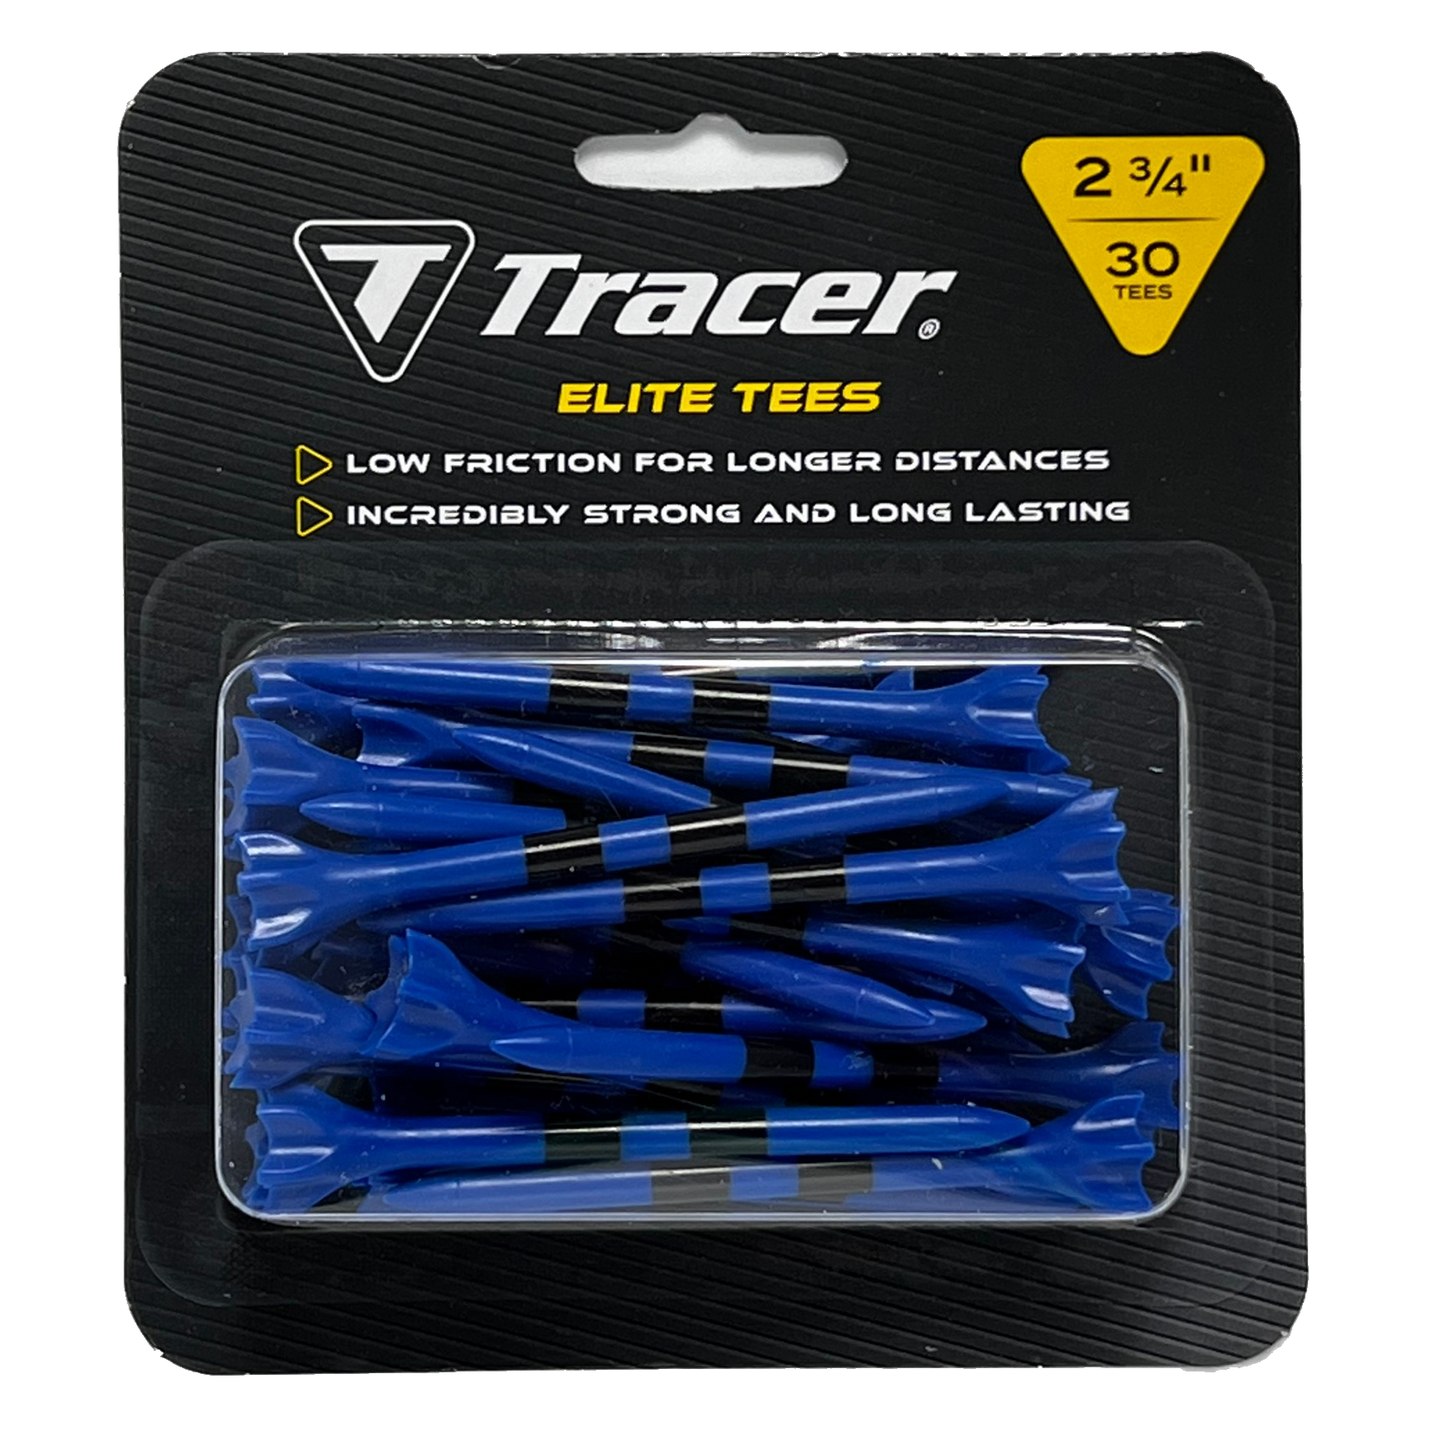 Tracer 2 3/4", Elite Plastic Tees - Blister Pack